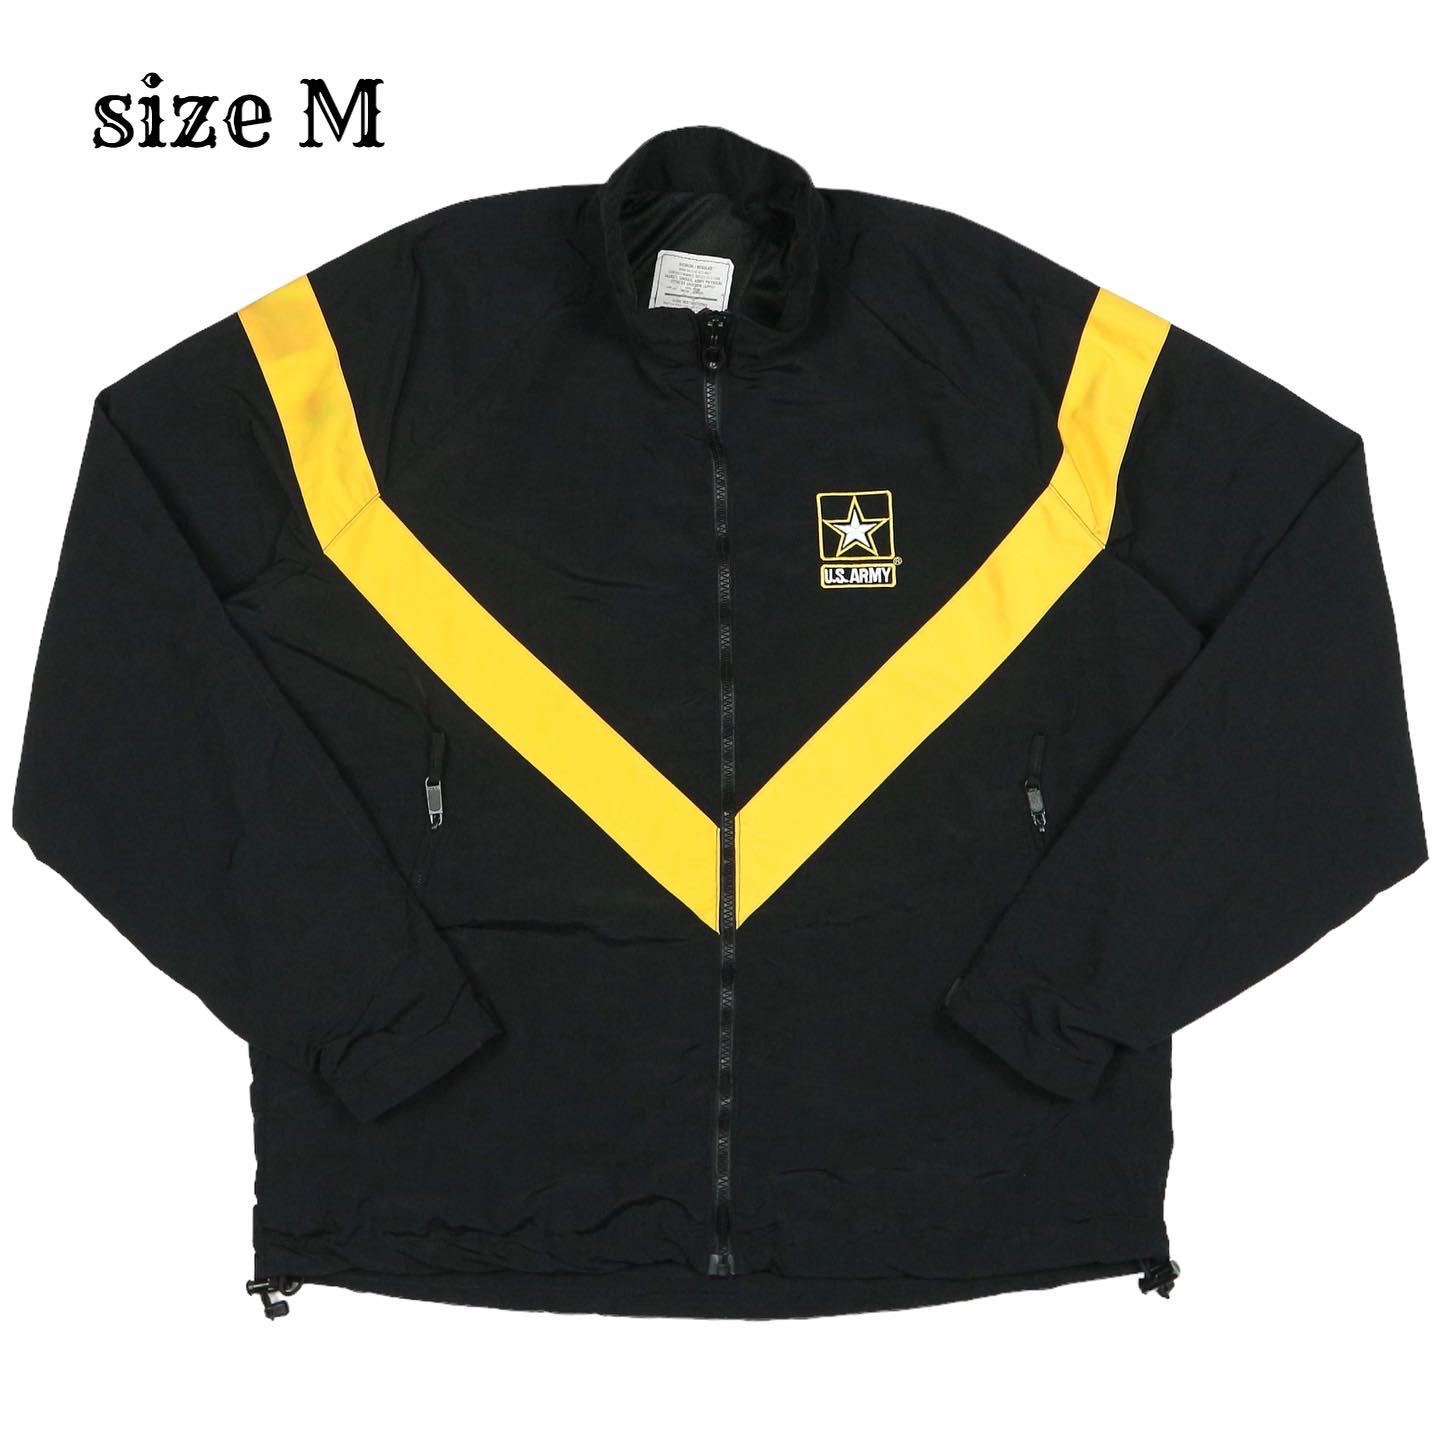 U.S. Army IPFU Jacket Size M